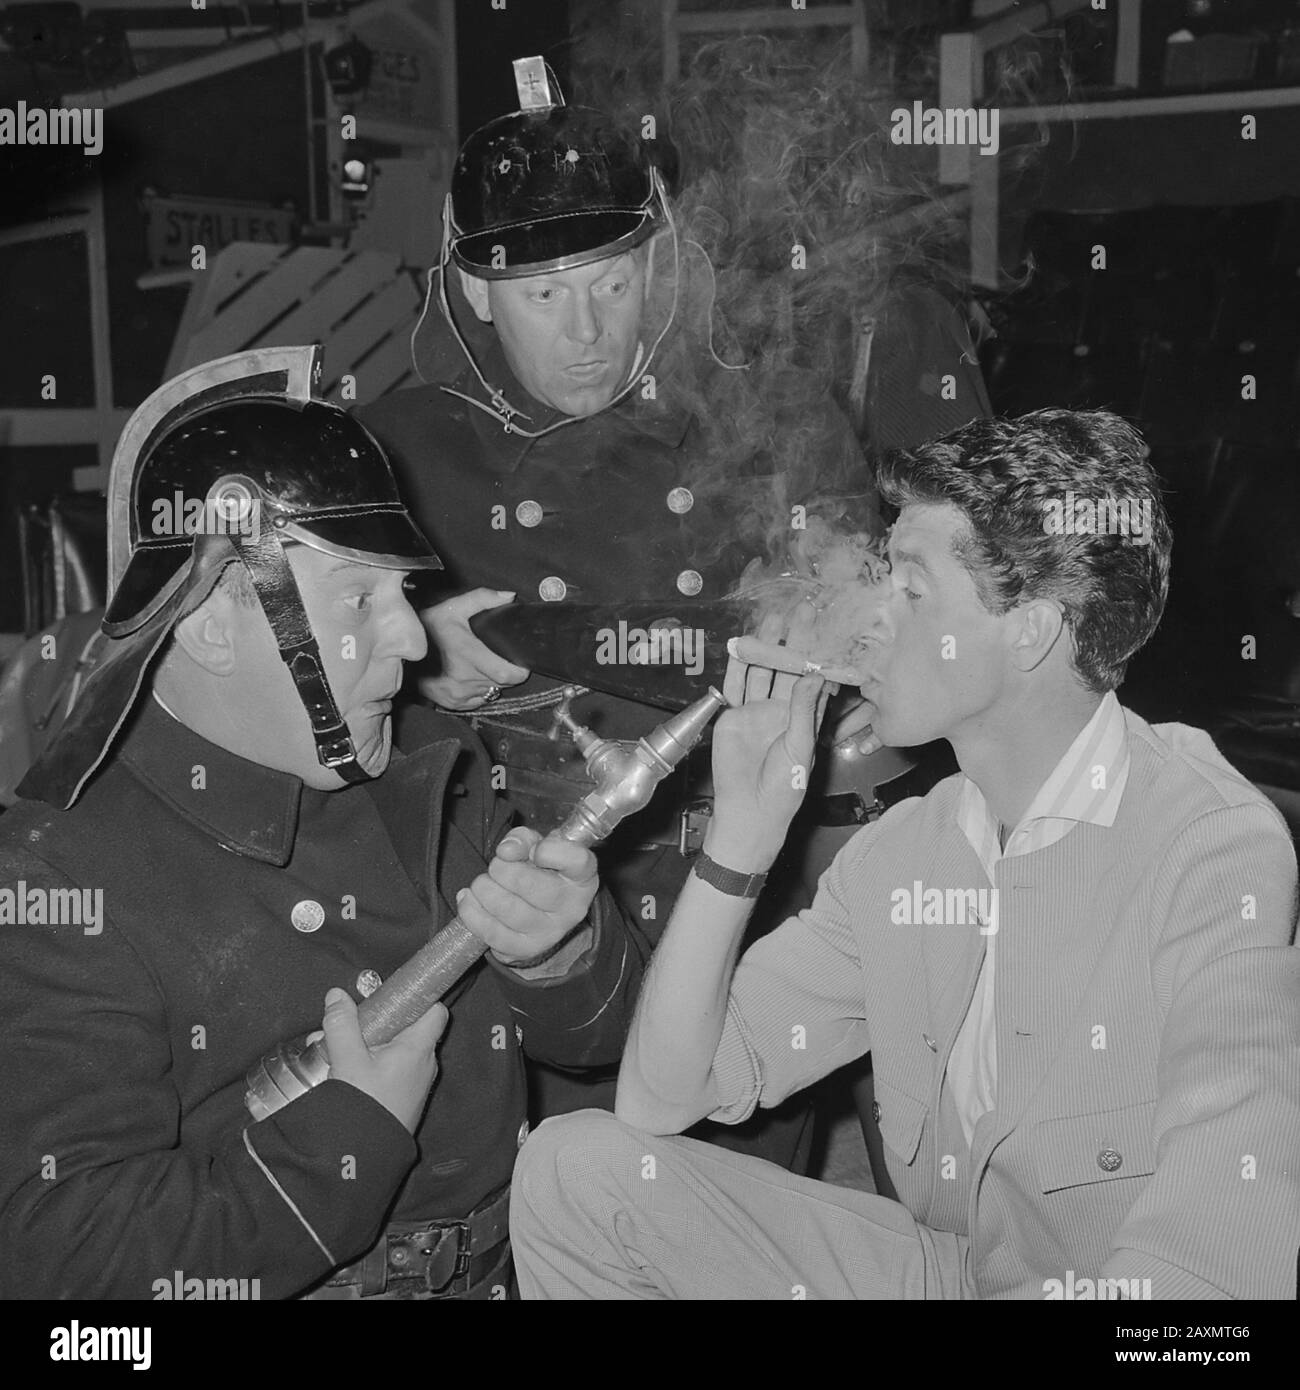 Circo Rudi Carrell, ensayo en Scheveningen; los montes (Piet Bambergen izquierda, derecha Fred Glover) y Rudi Carrell 26 de junio de 1964 Foto de stock